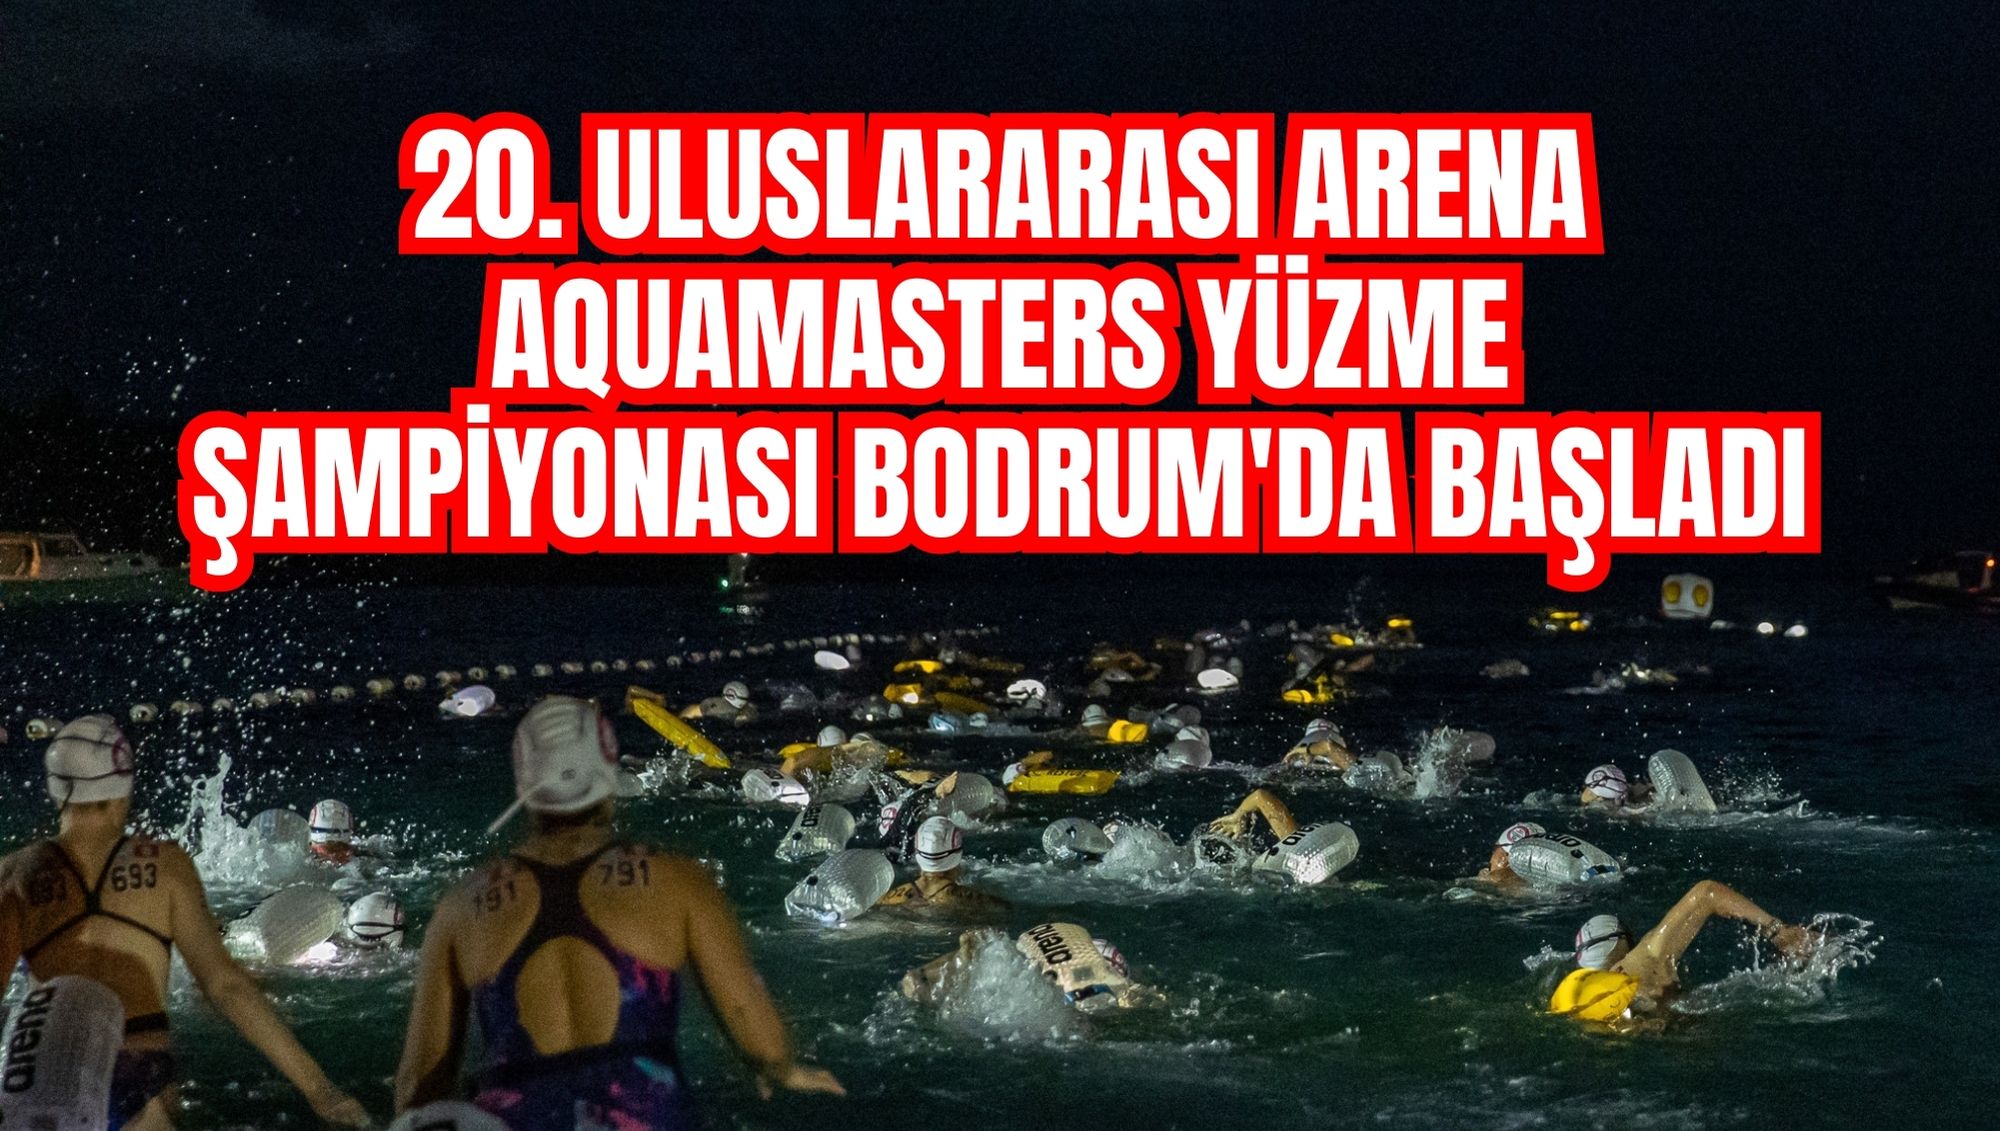 20. Uluslararası Arena Aquamasters Yüzme Şampiyonası Bodrum'da başladı